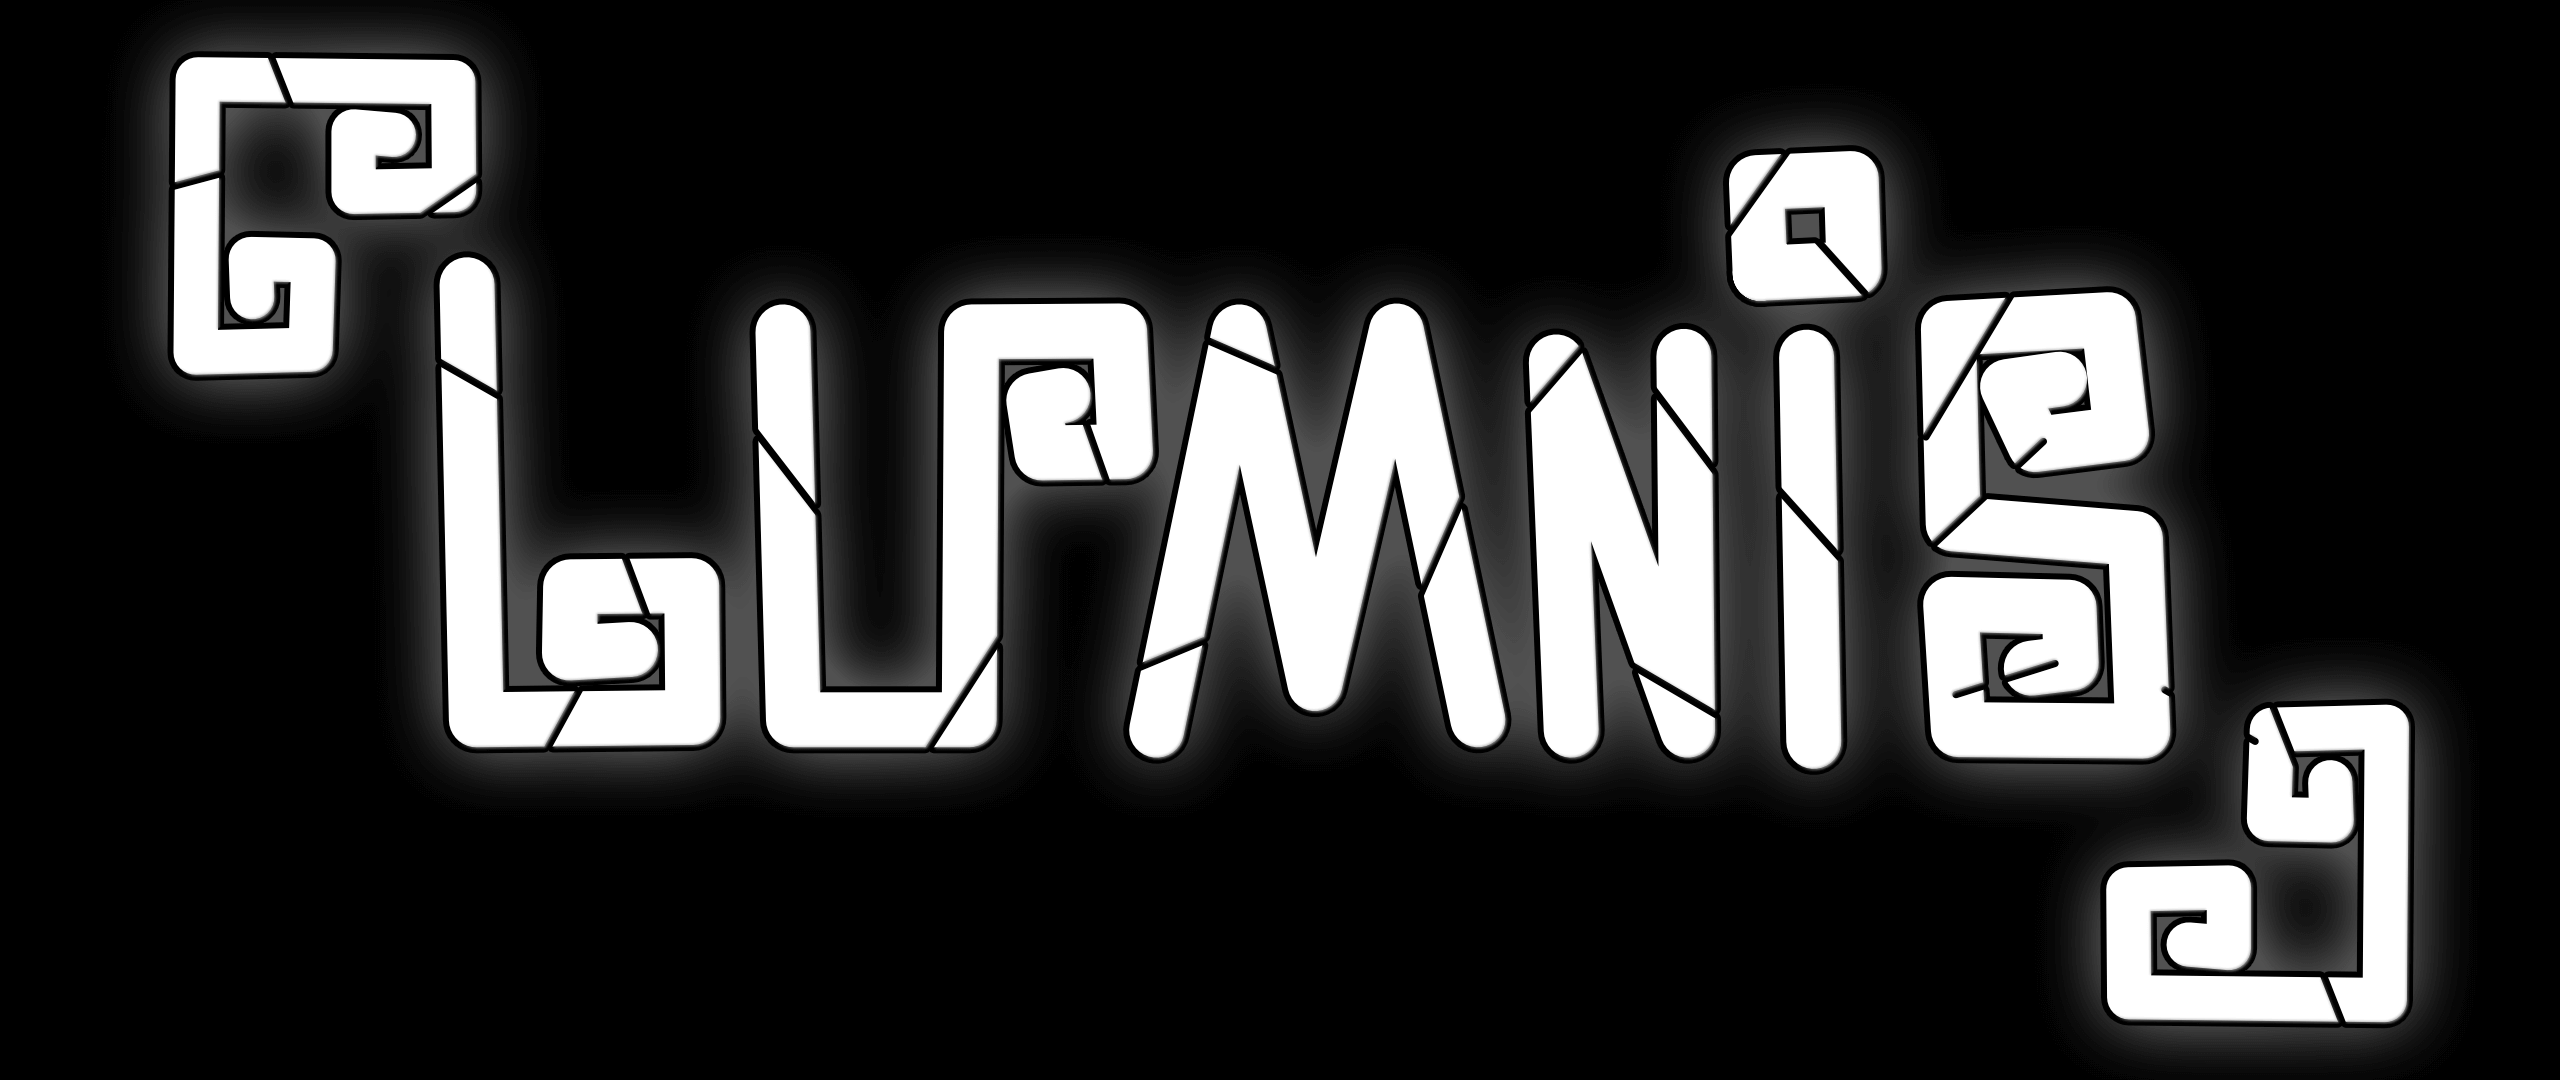 lumnis logo black